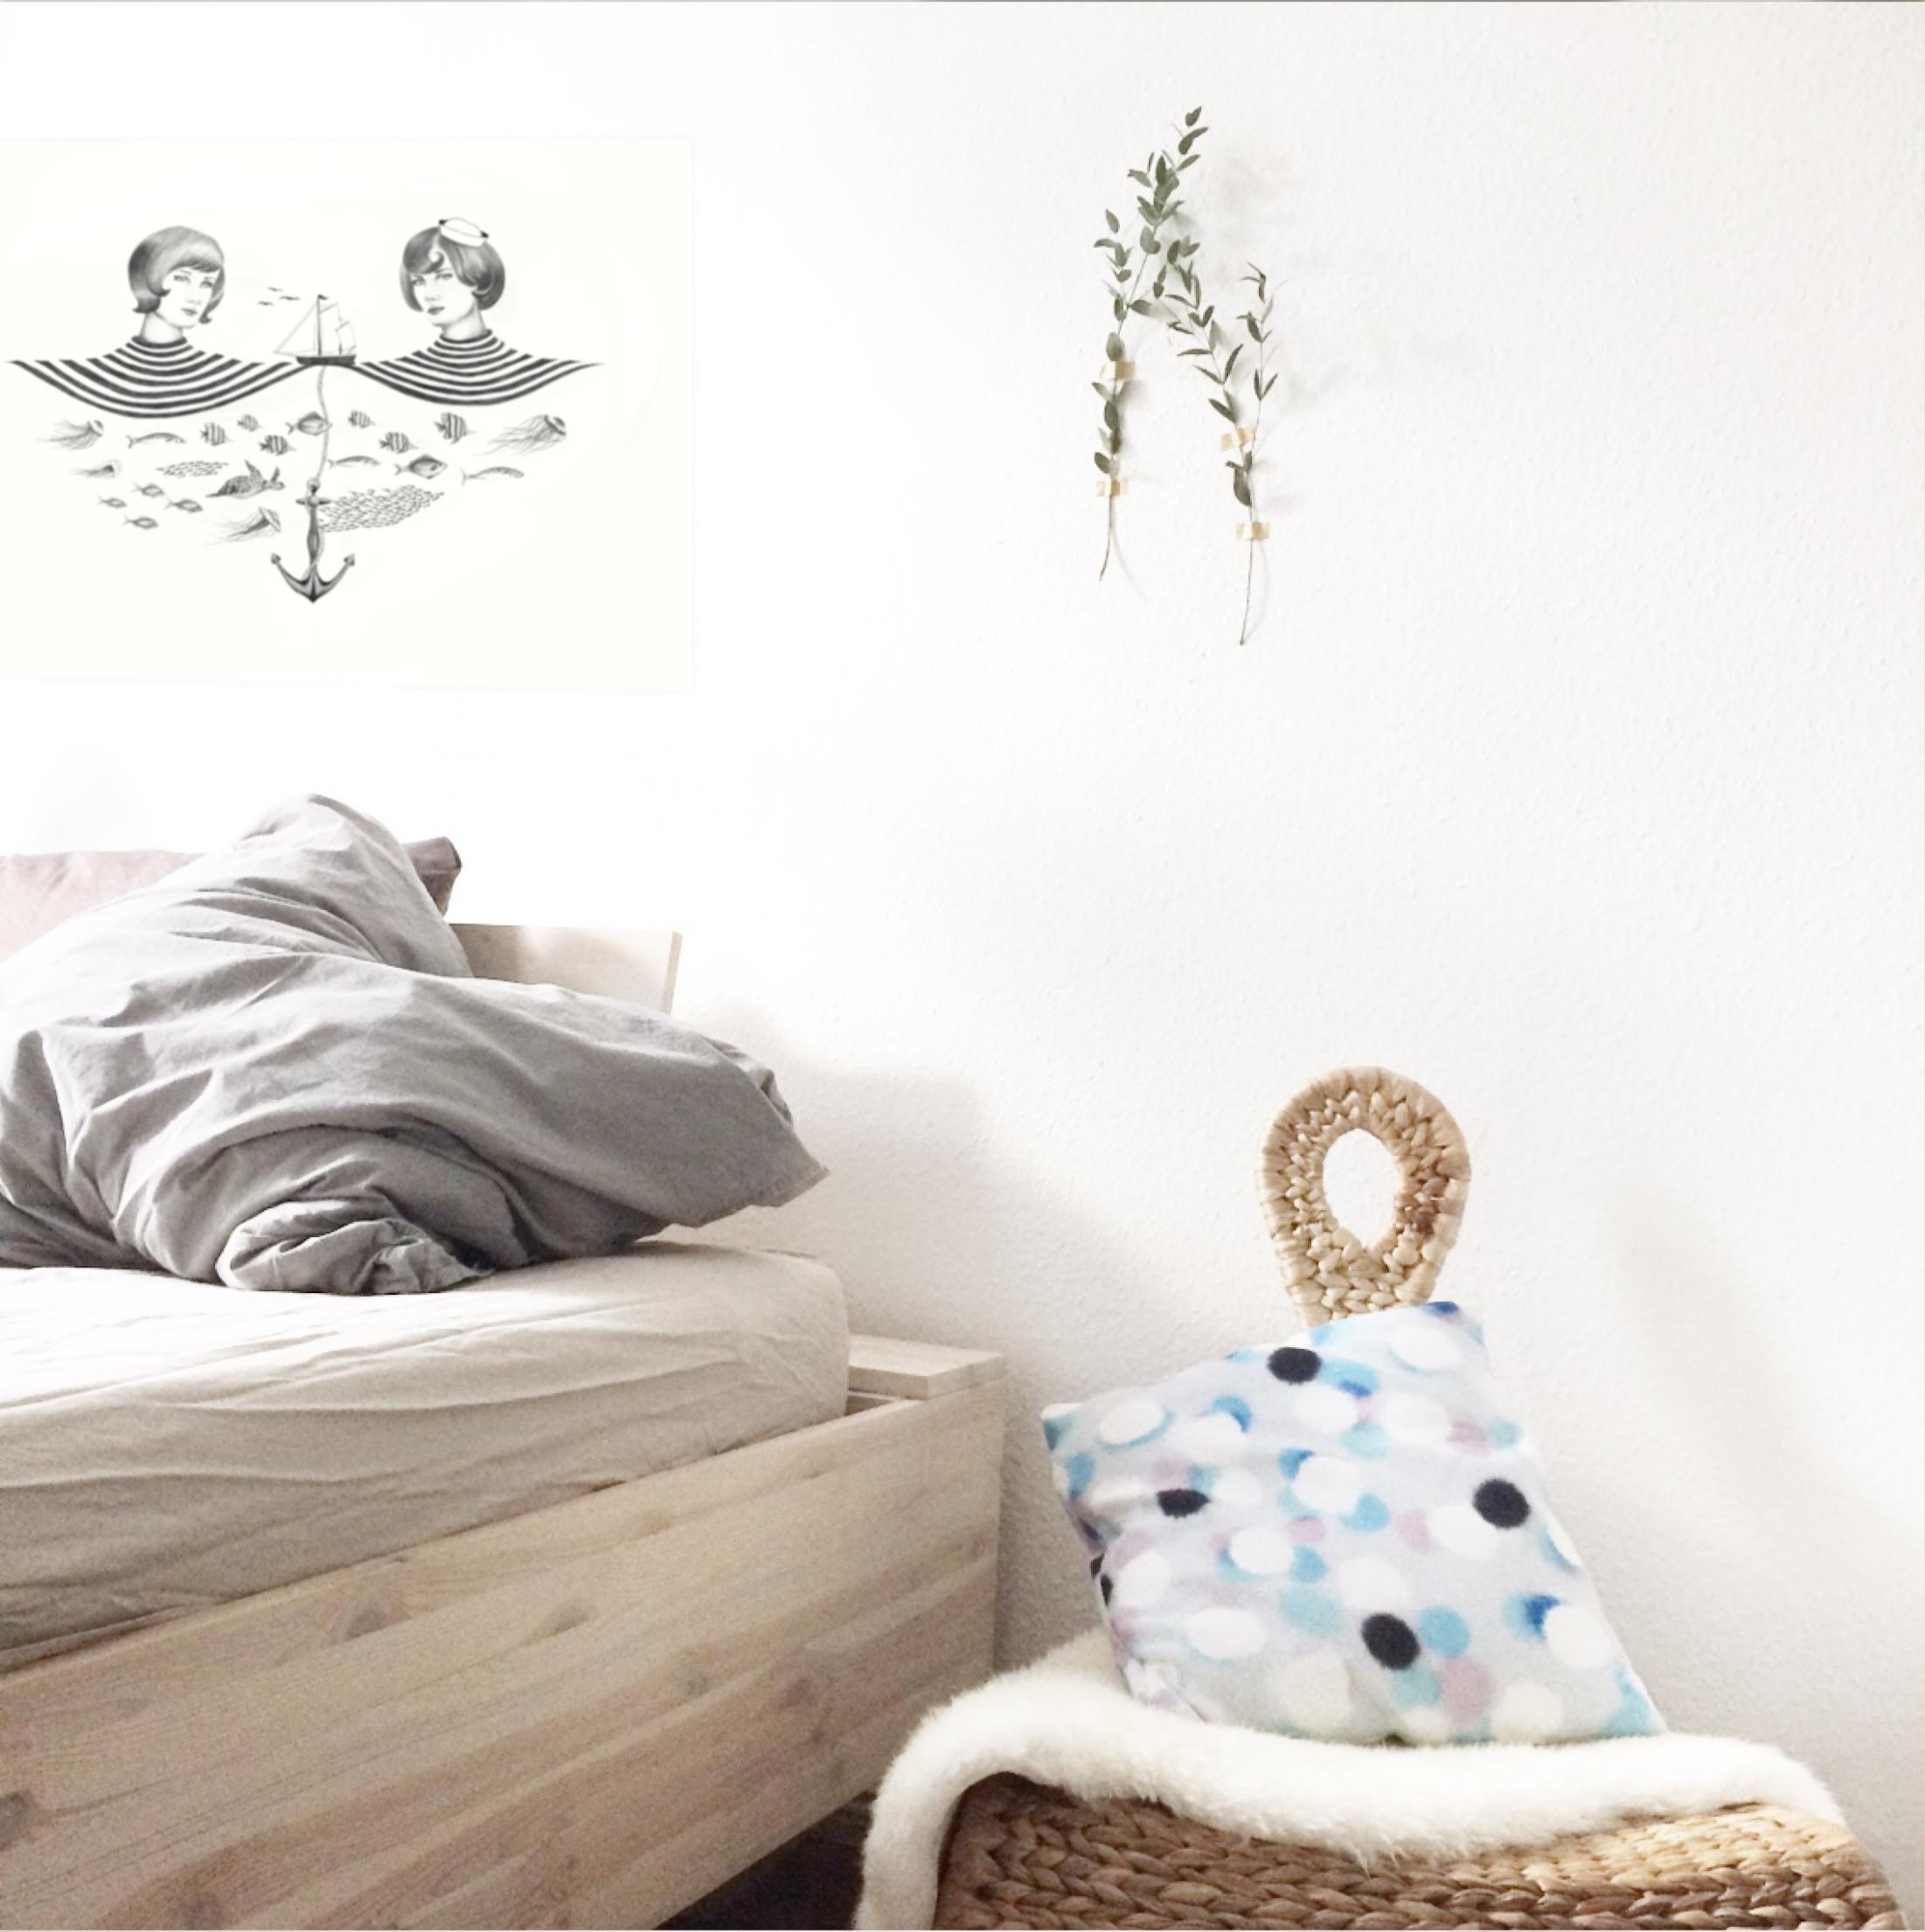 Gutenmorgensonne + neue #deko aus der eigenen Kollektion 💛 #youdesignme #poster #schlafzimmer #kunstdruck #kissen #bett